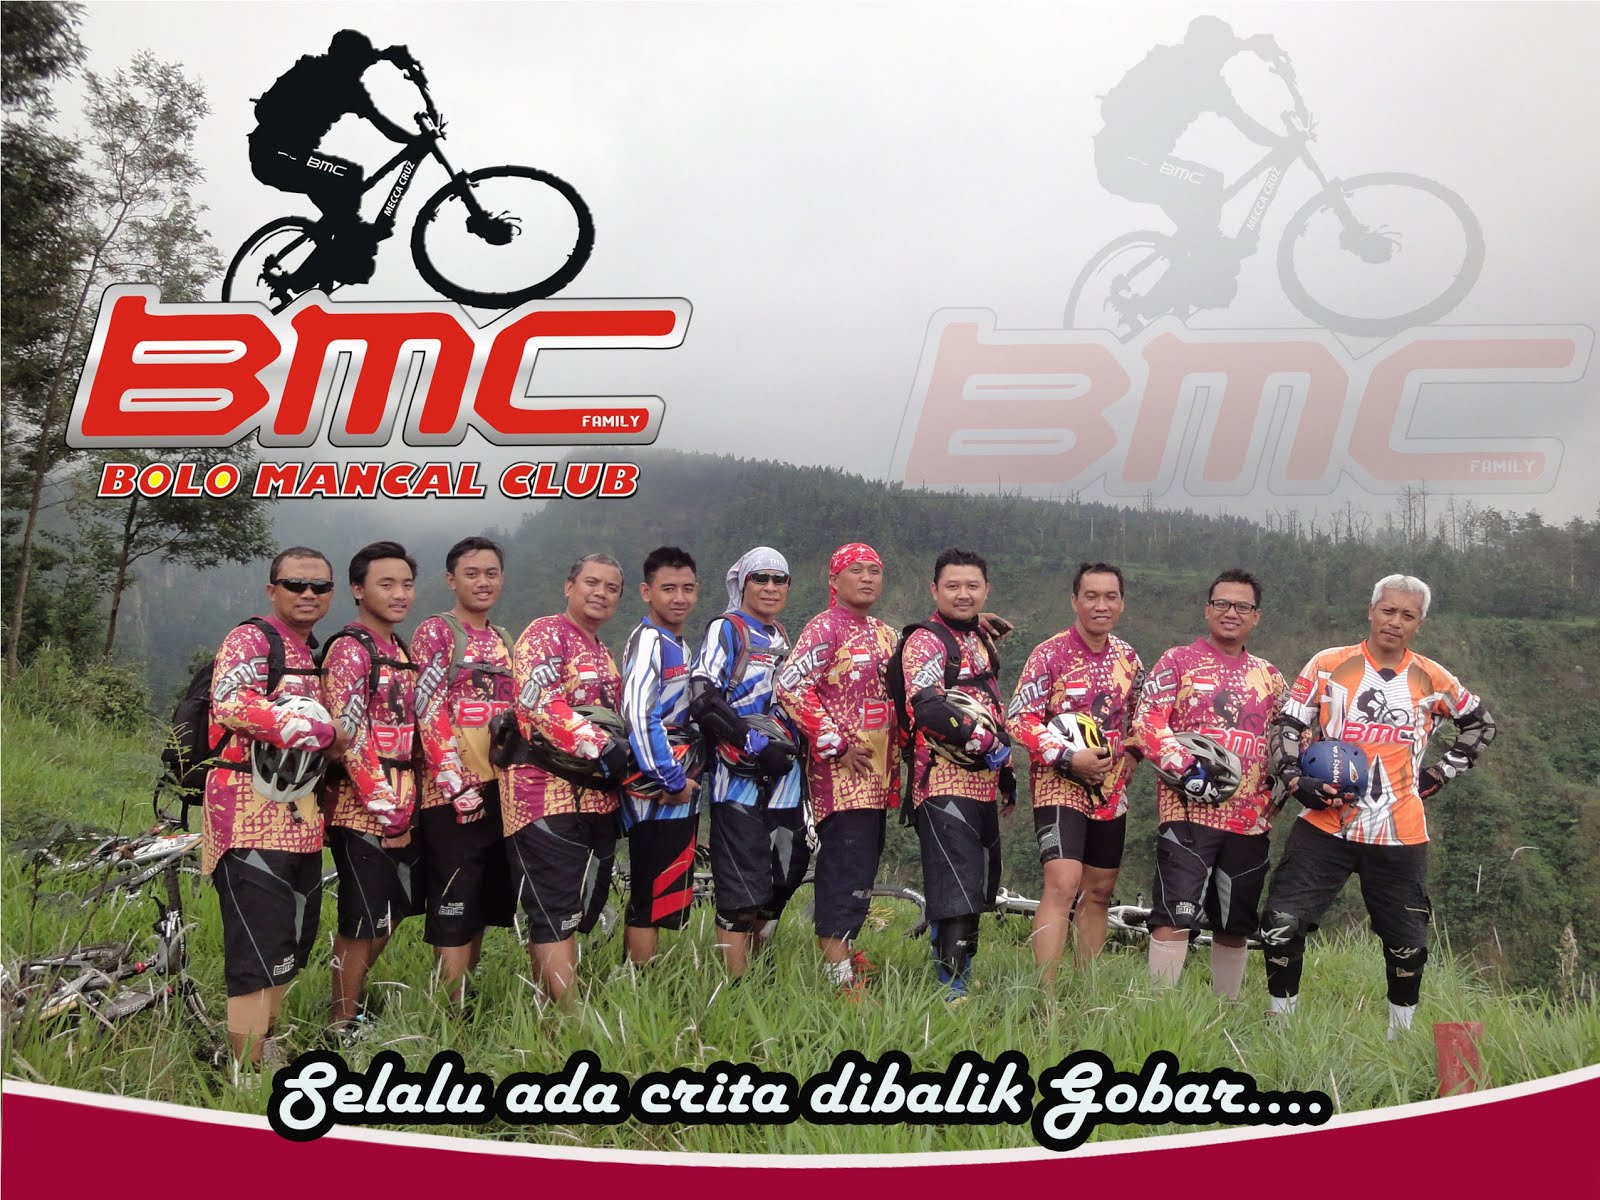 BMC's Blog